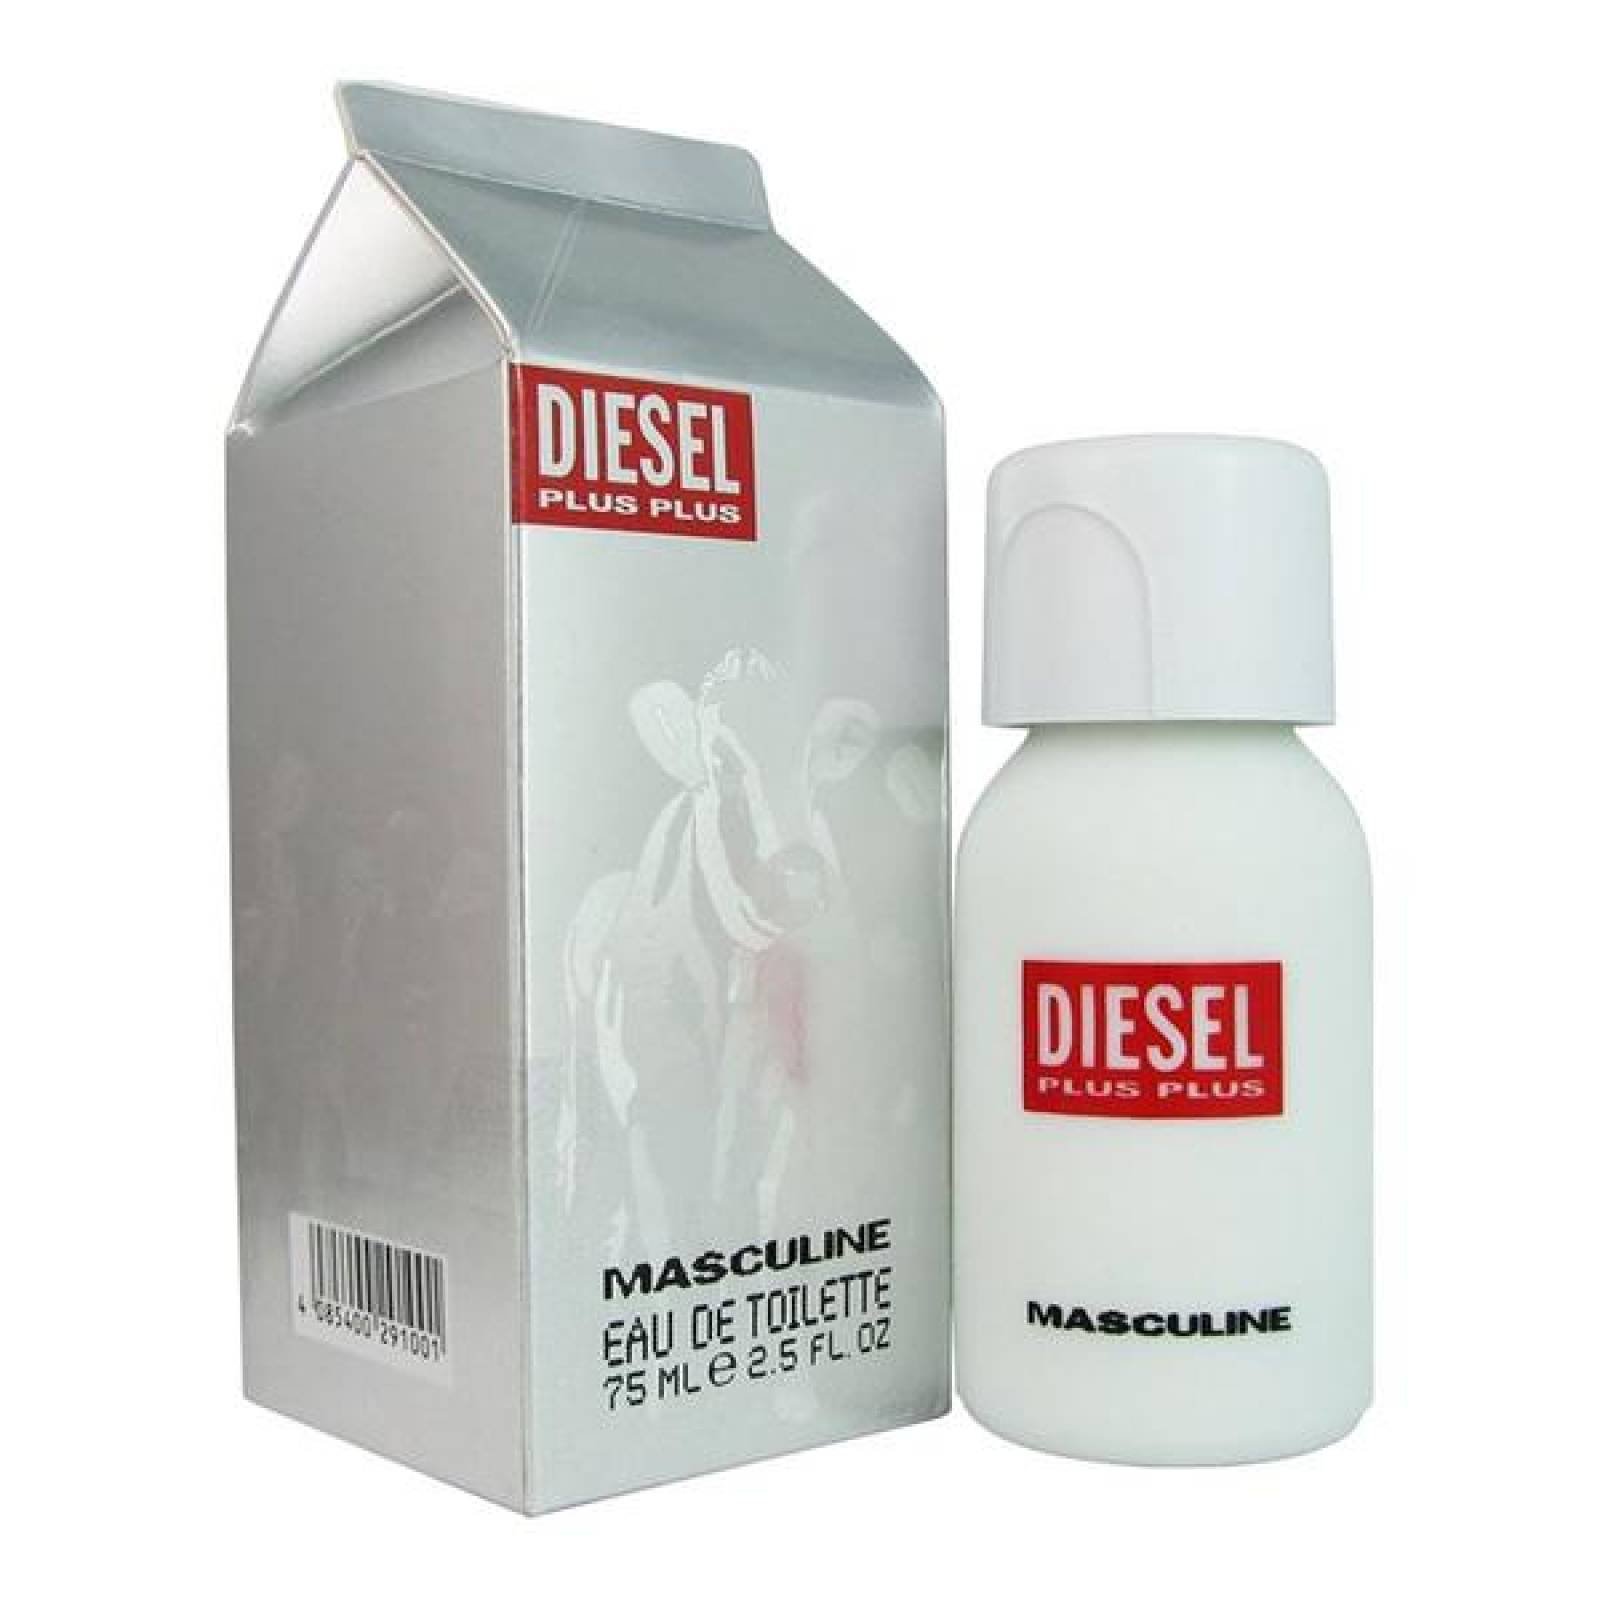 Diesel Plus Plus Caballero 75 ml Diesel Fragances Spray